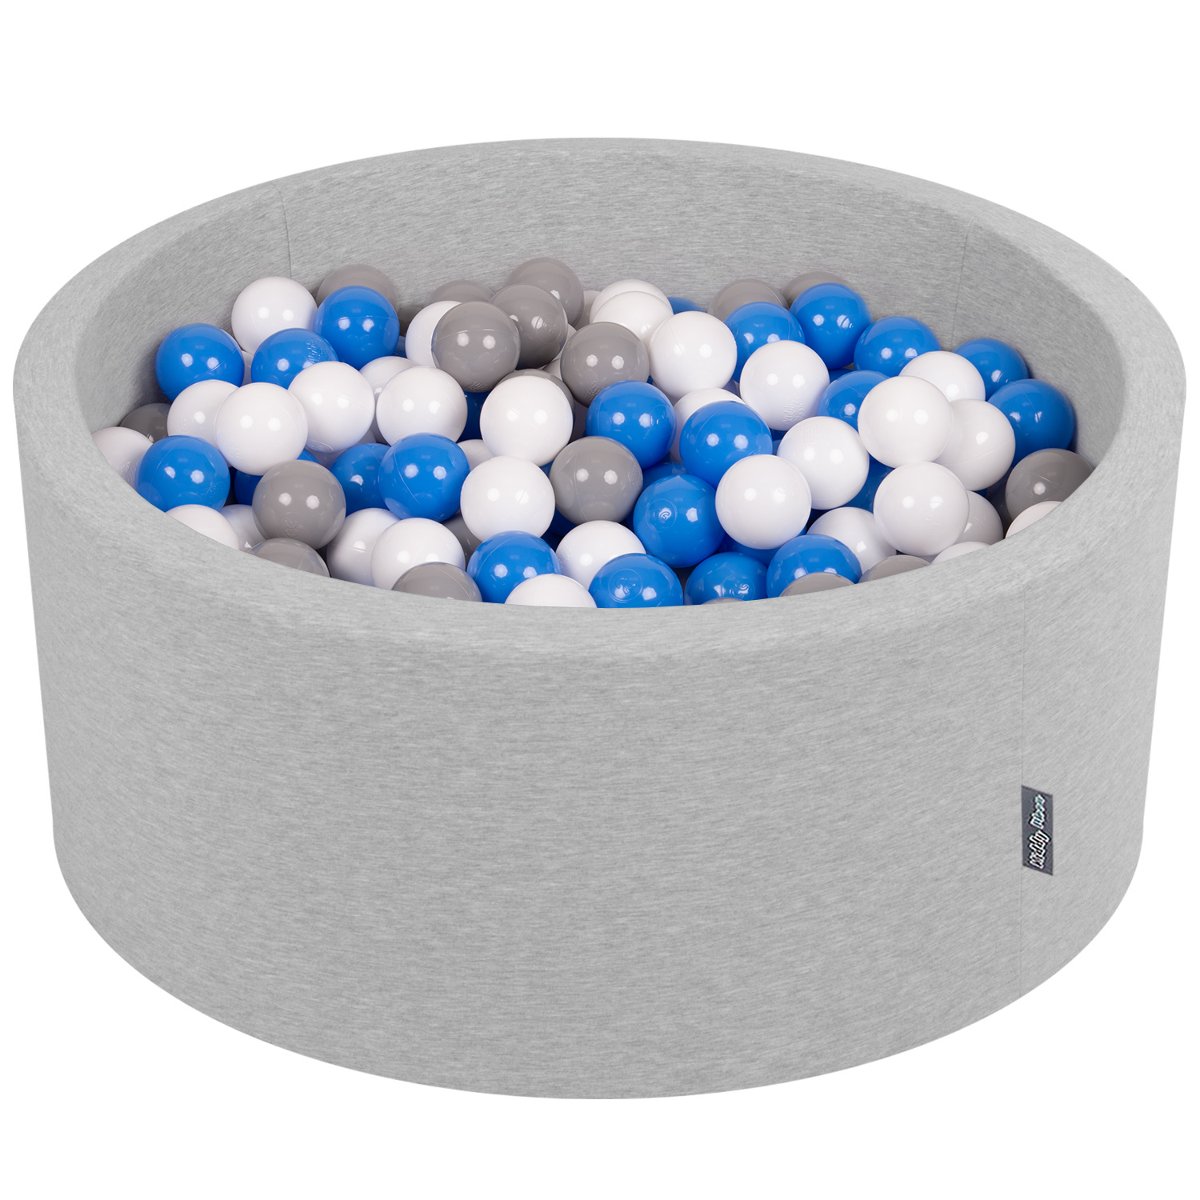 KiddyMoon, suchy basen okrągły z piłeczkami 7cm 90x40 jasnoszary: szary-biały-niebieski 90x40cm/200piłek